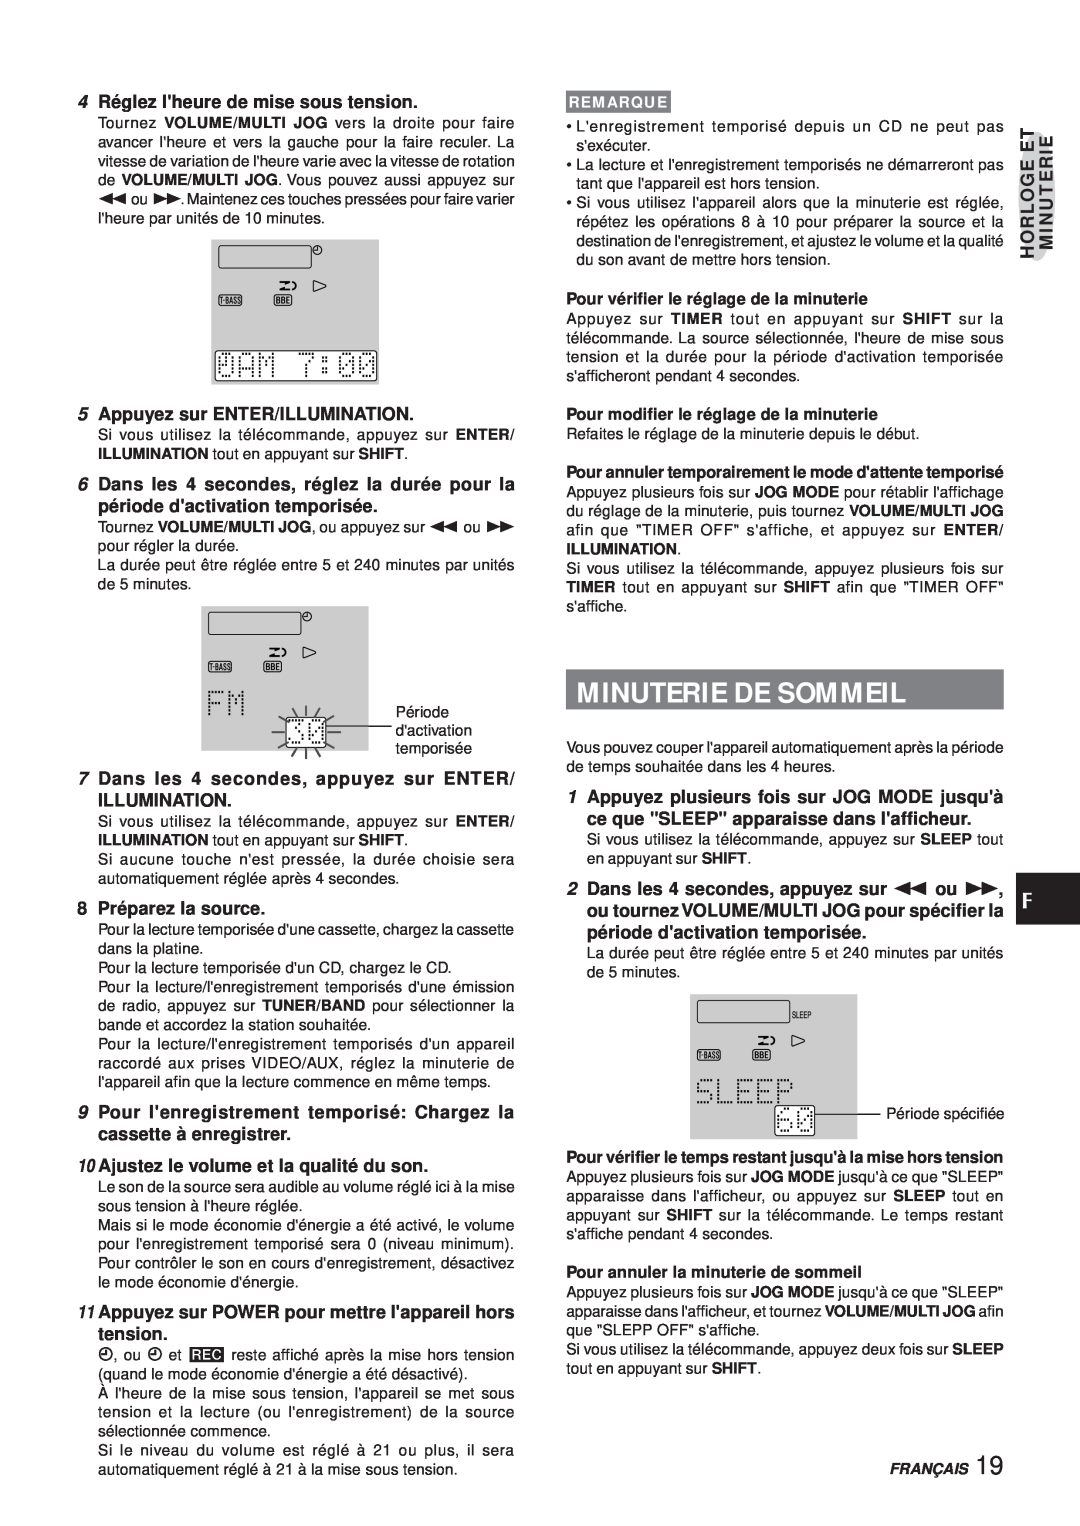 Aiwa XR-MS3 manual Minuterie De Sommeil, 4 Réglez lheure de mise sous tension, Appuyez sur ENTER/ILLUMINATION 